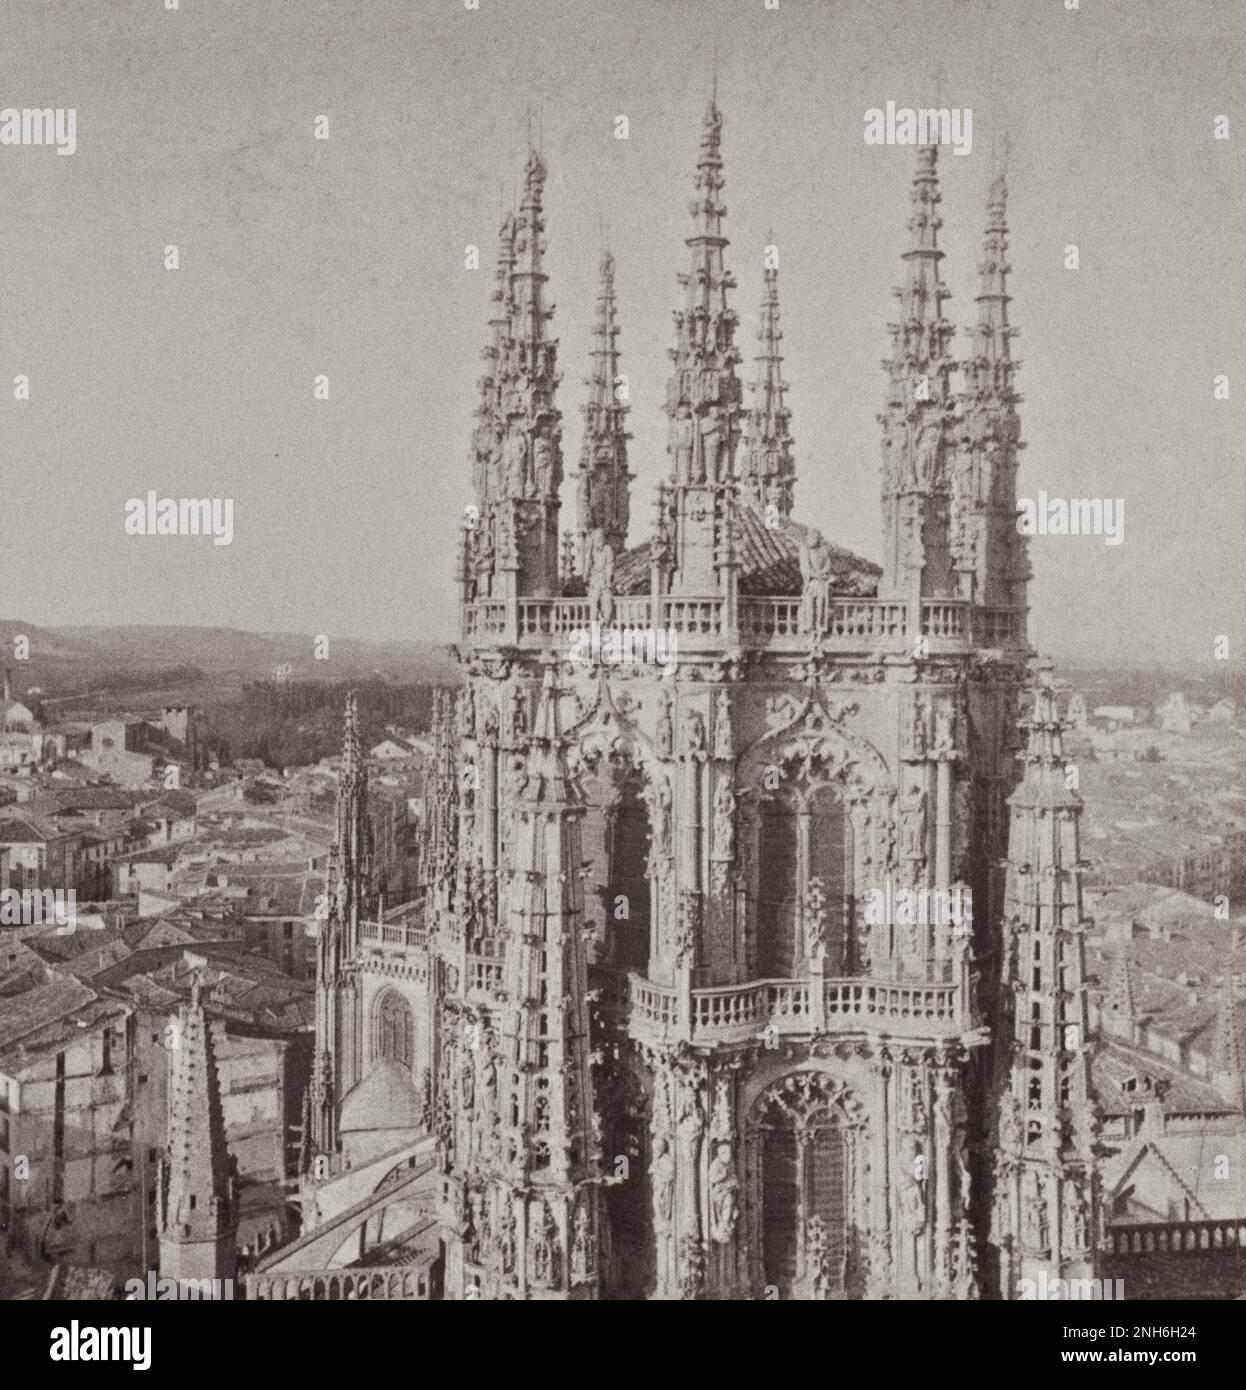 Architecture de la vieille Espagne. Célèbre lanterne octogonale, 180 m Haut, au centre de la cathédrale de Burgos, Espagne. 1908 Banque D'Images